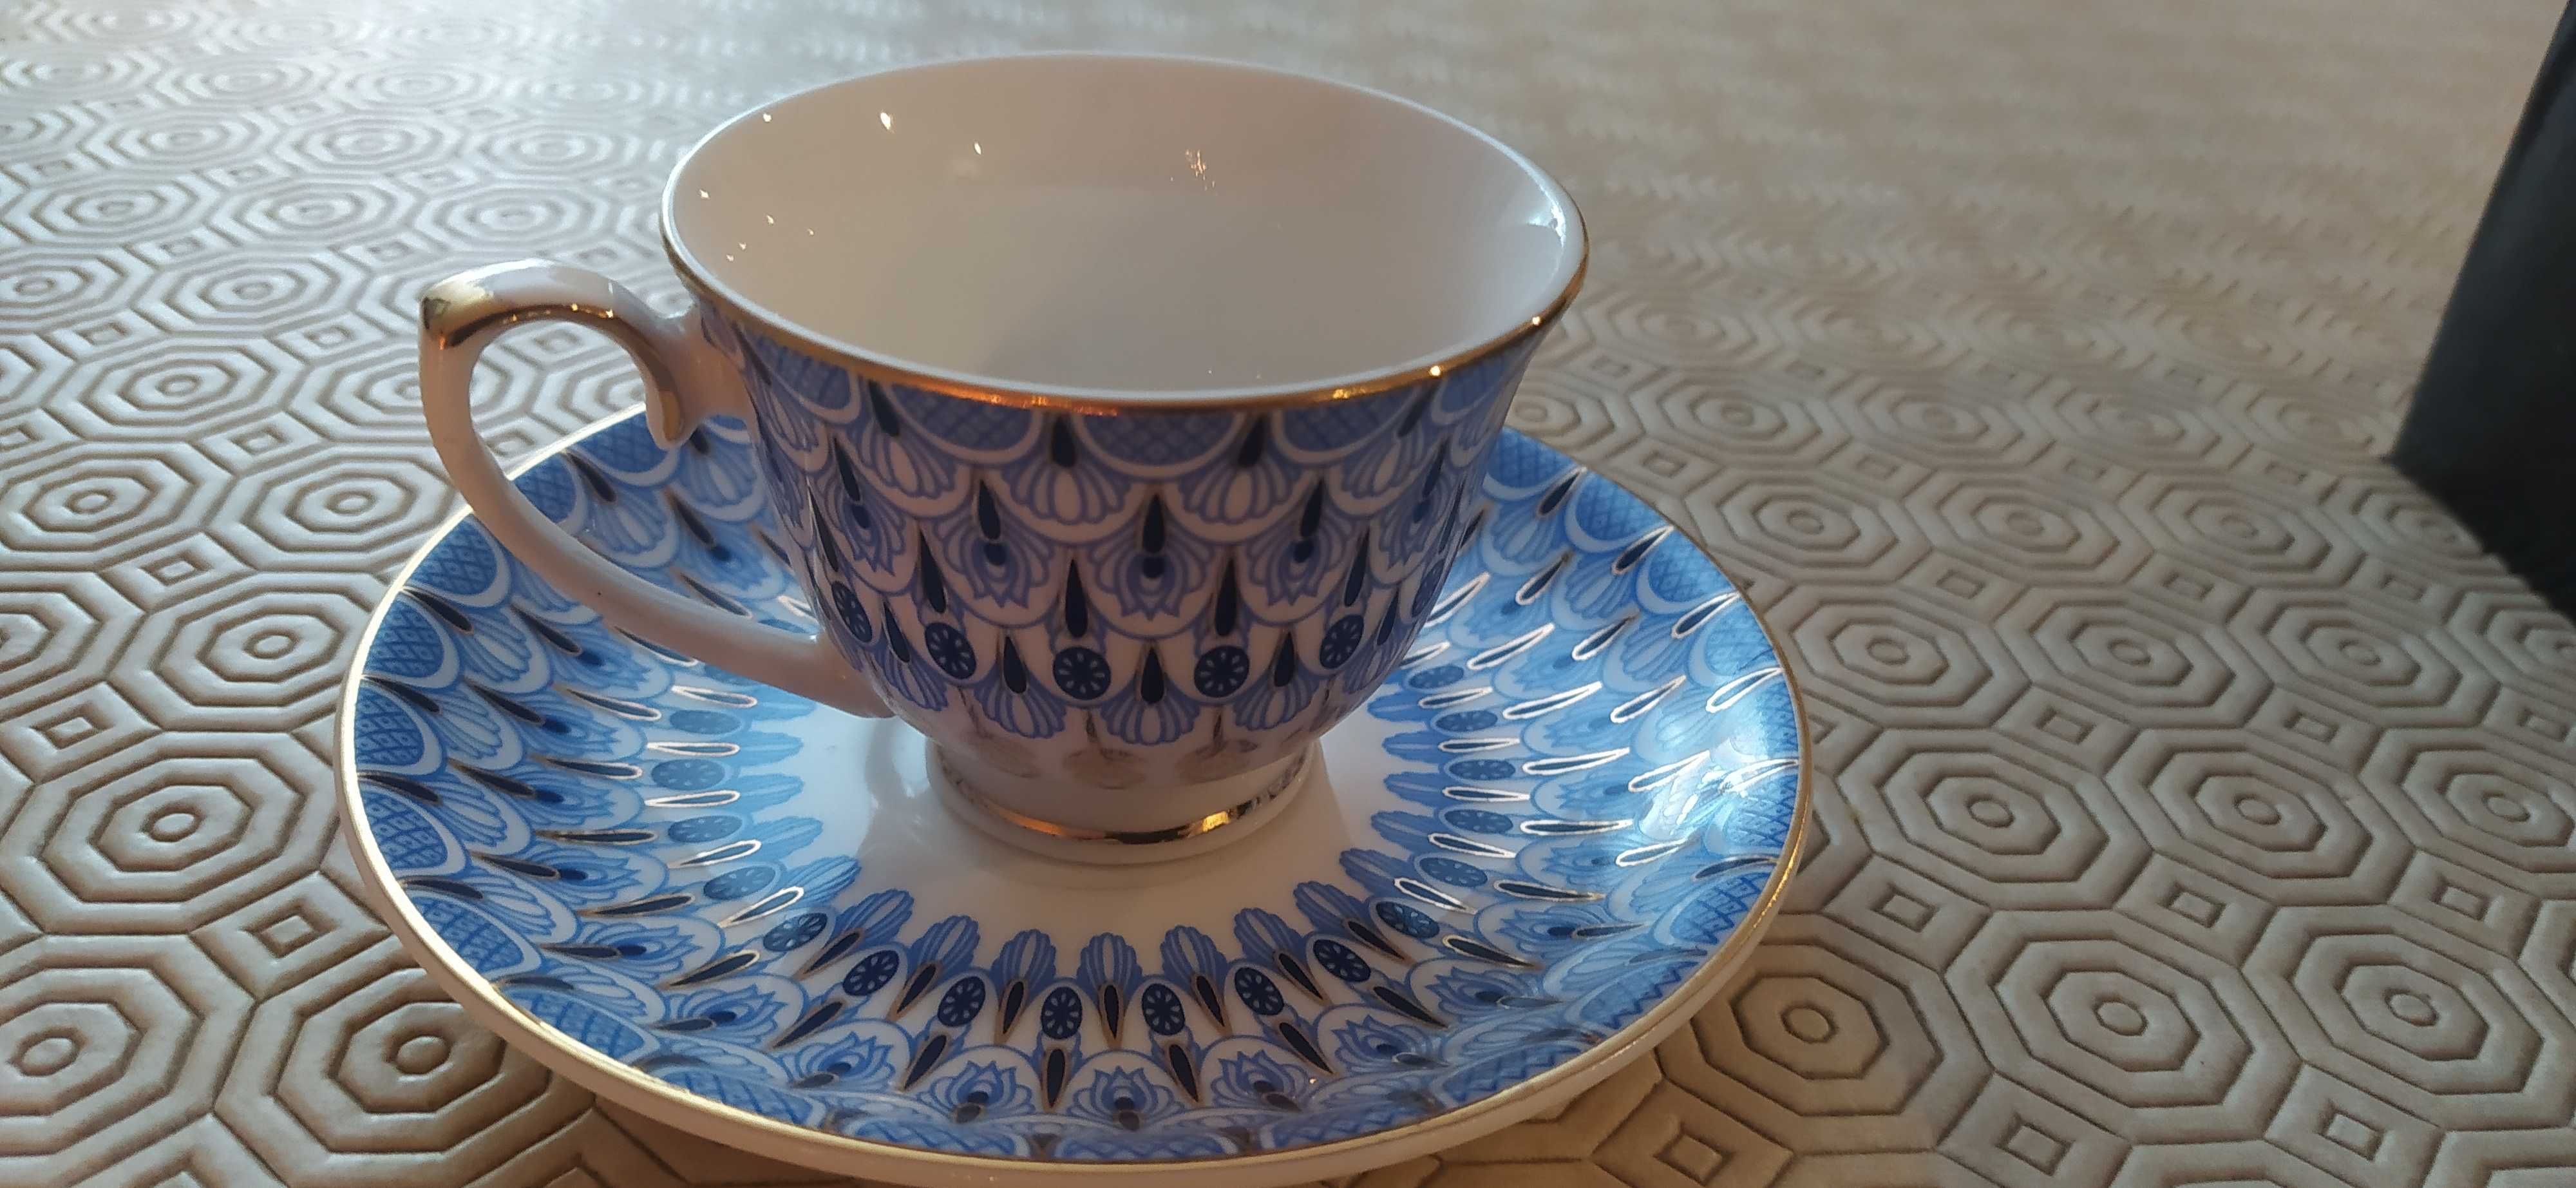 Chávenas de Porcelana